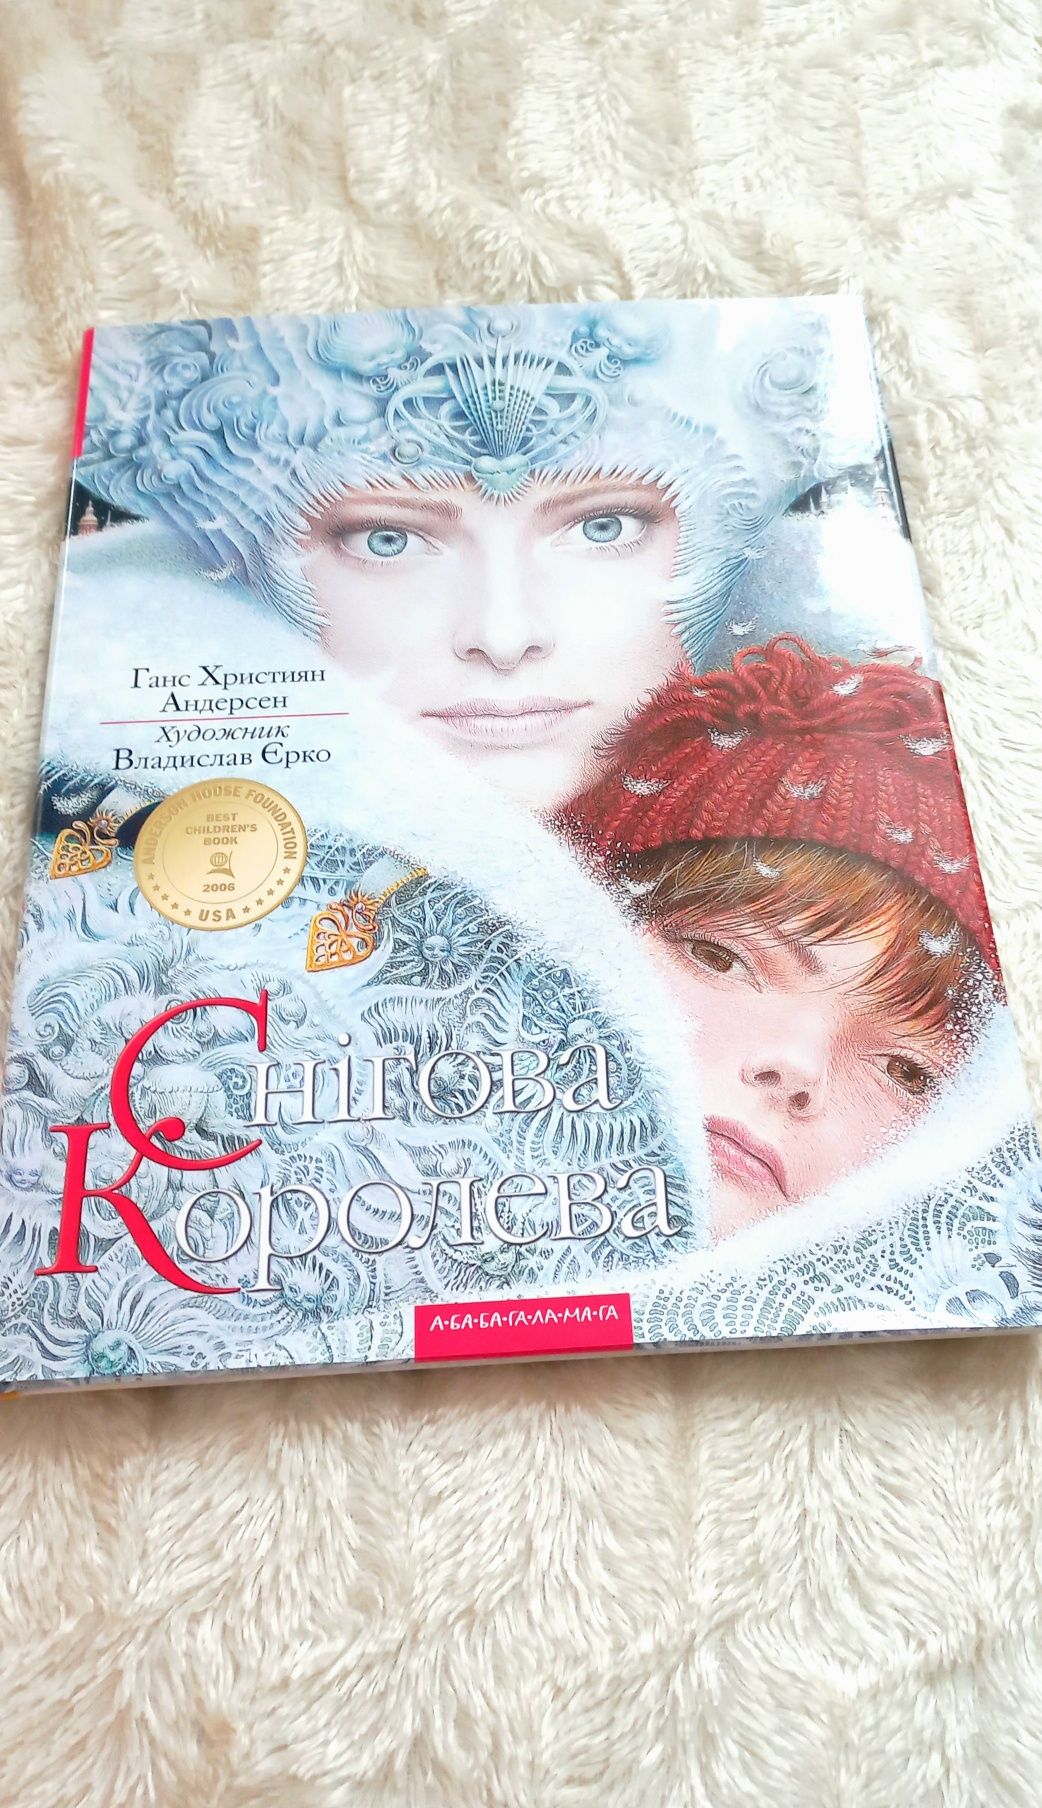 Снігова королева українською книжка Ганс Християн Андерсен  НОВІ